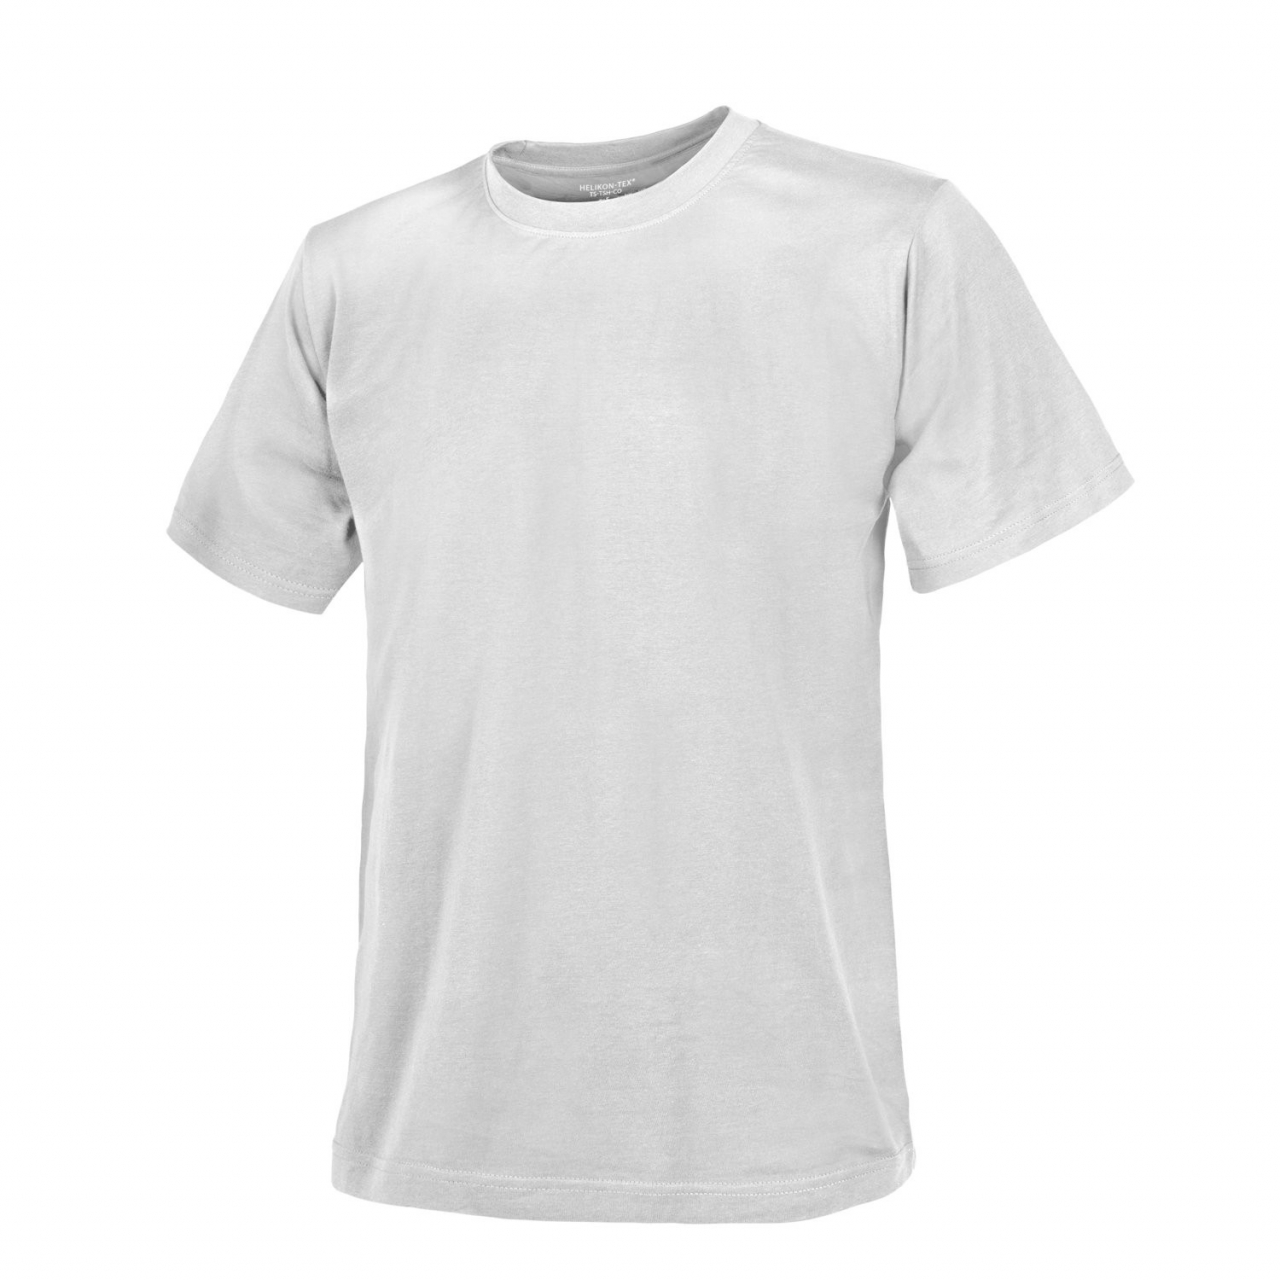 Tričko Helikon Classic Army - bílé, XL